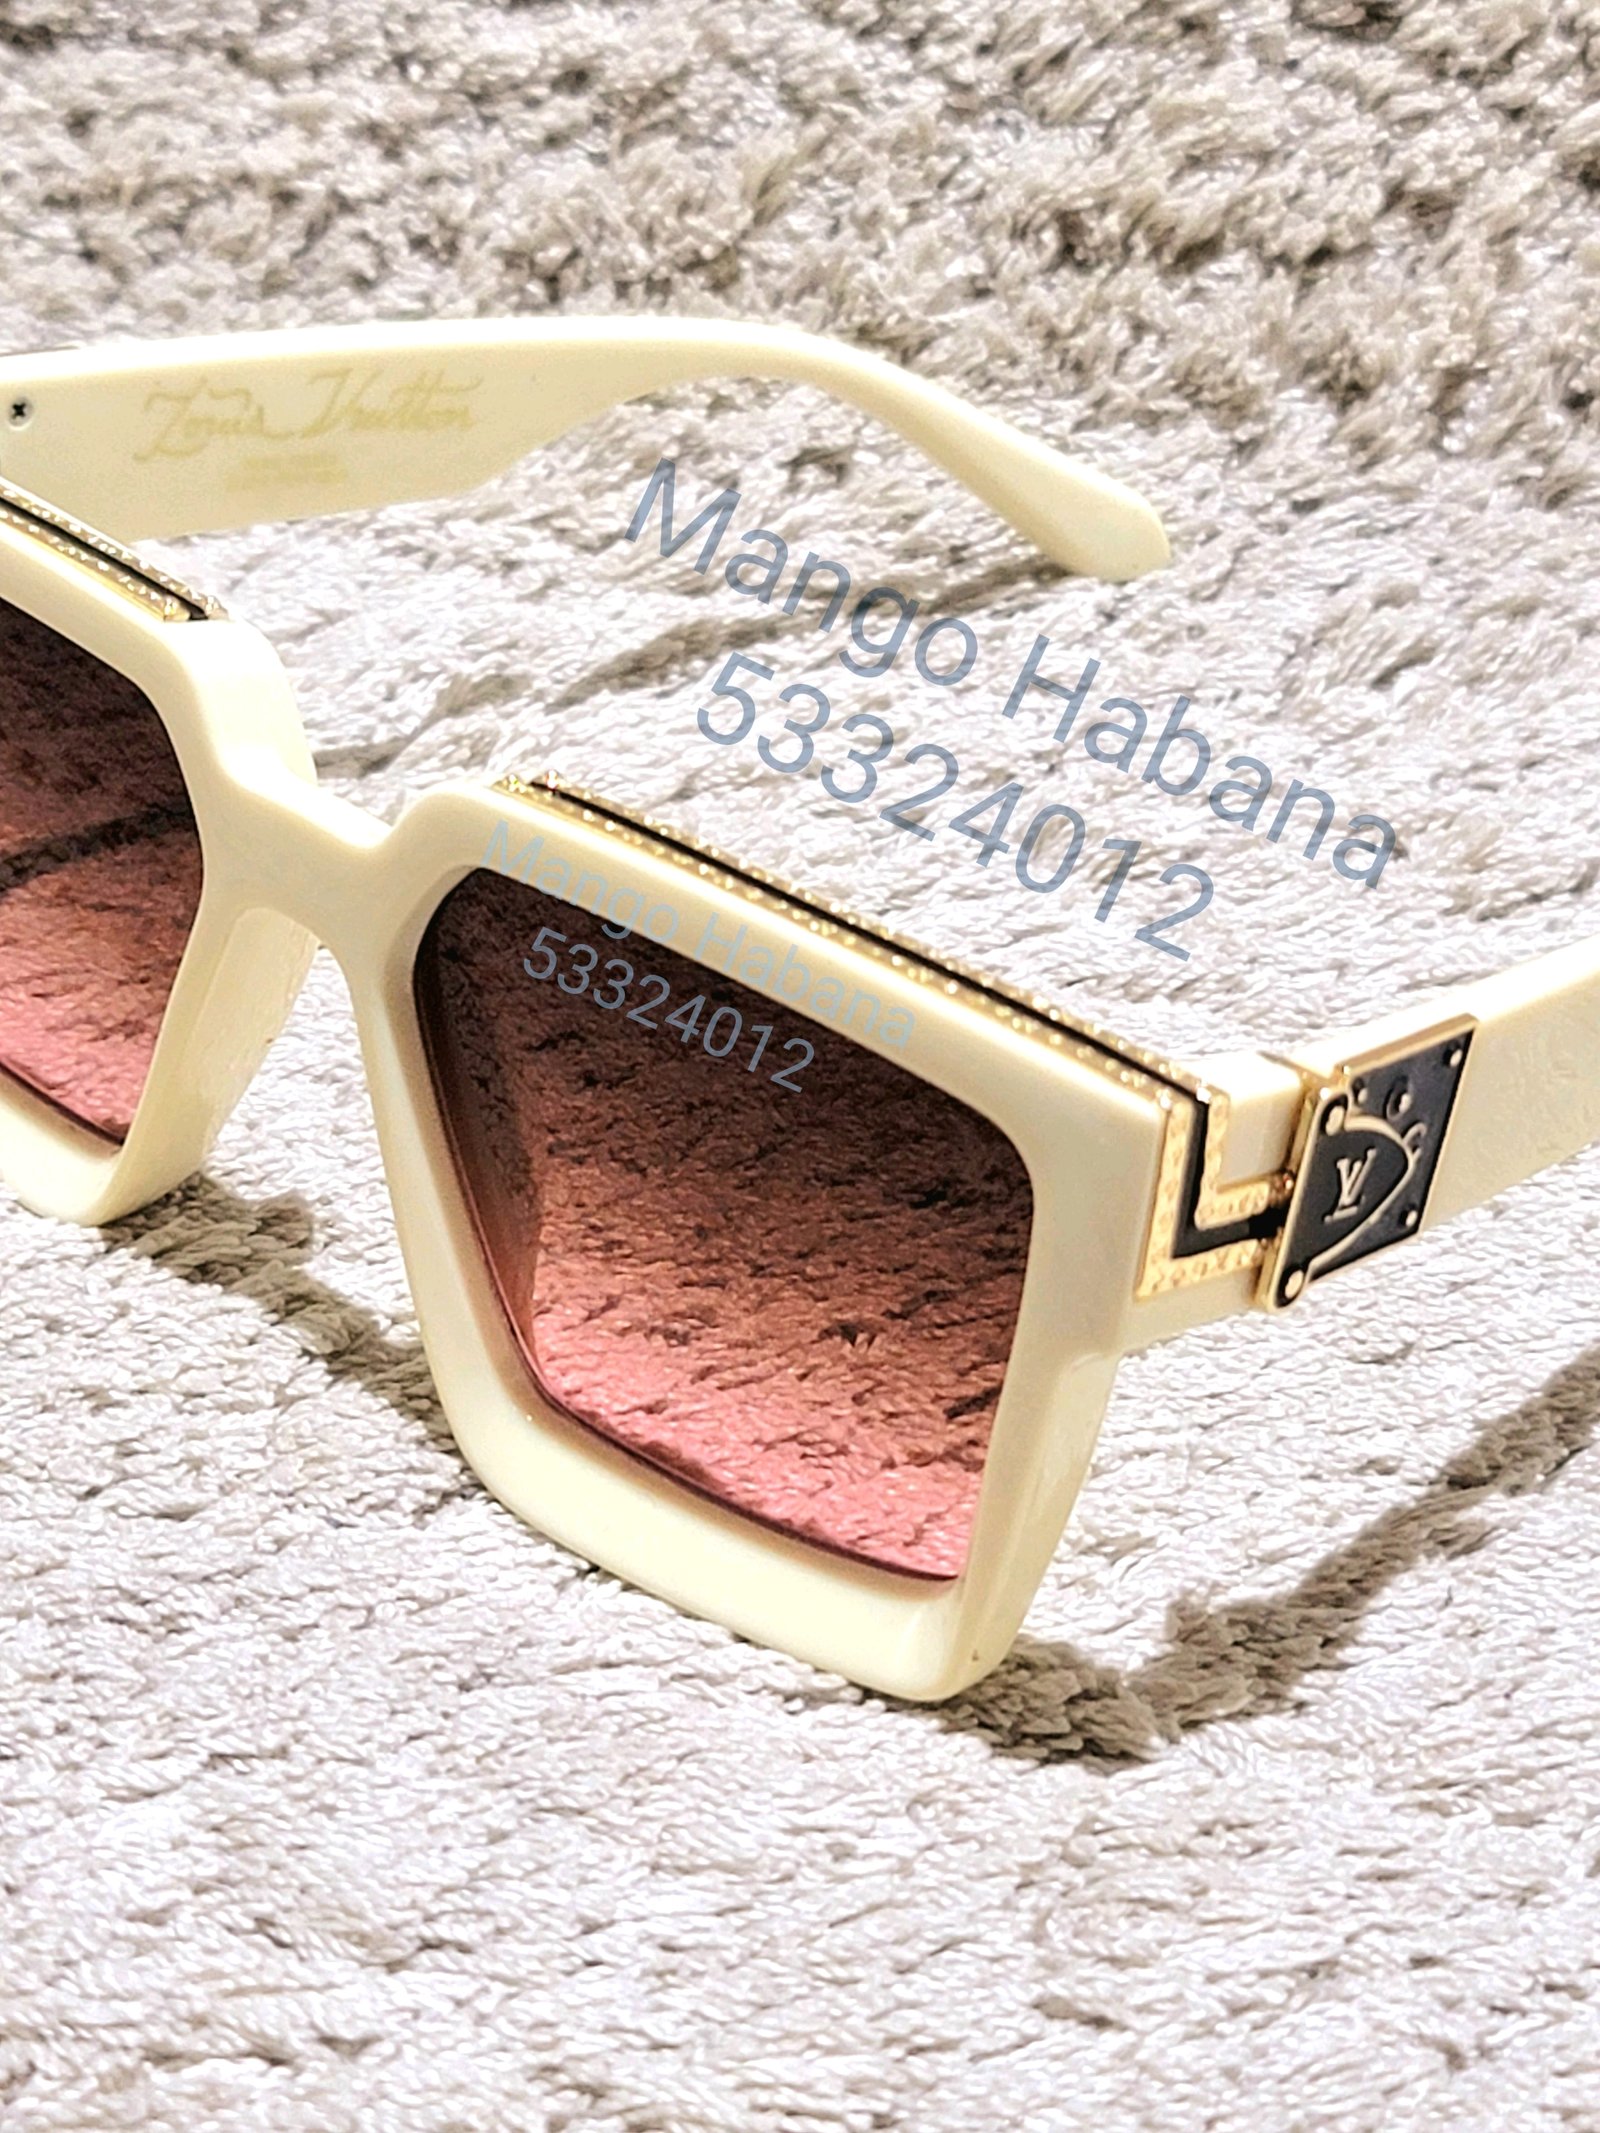 Las mejores ofertas en Gafas de sol para hombres Louis Vuitton